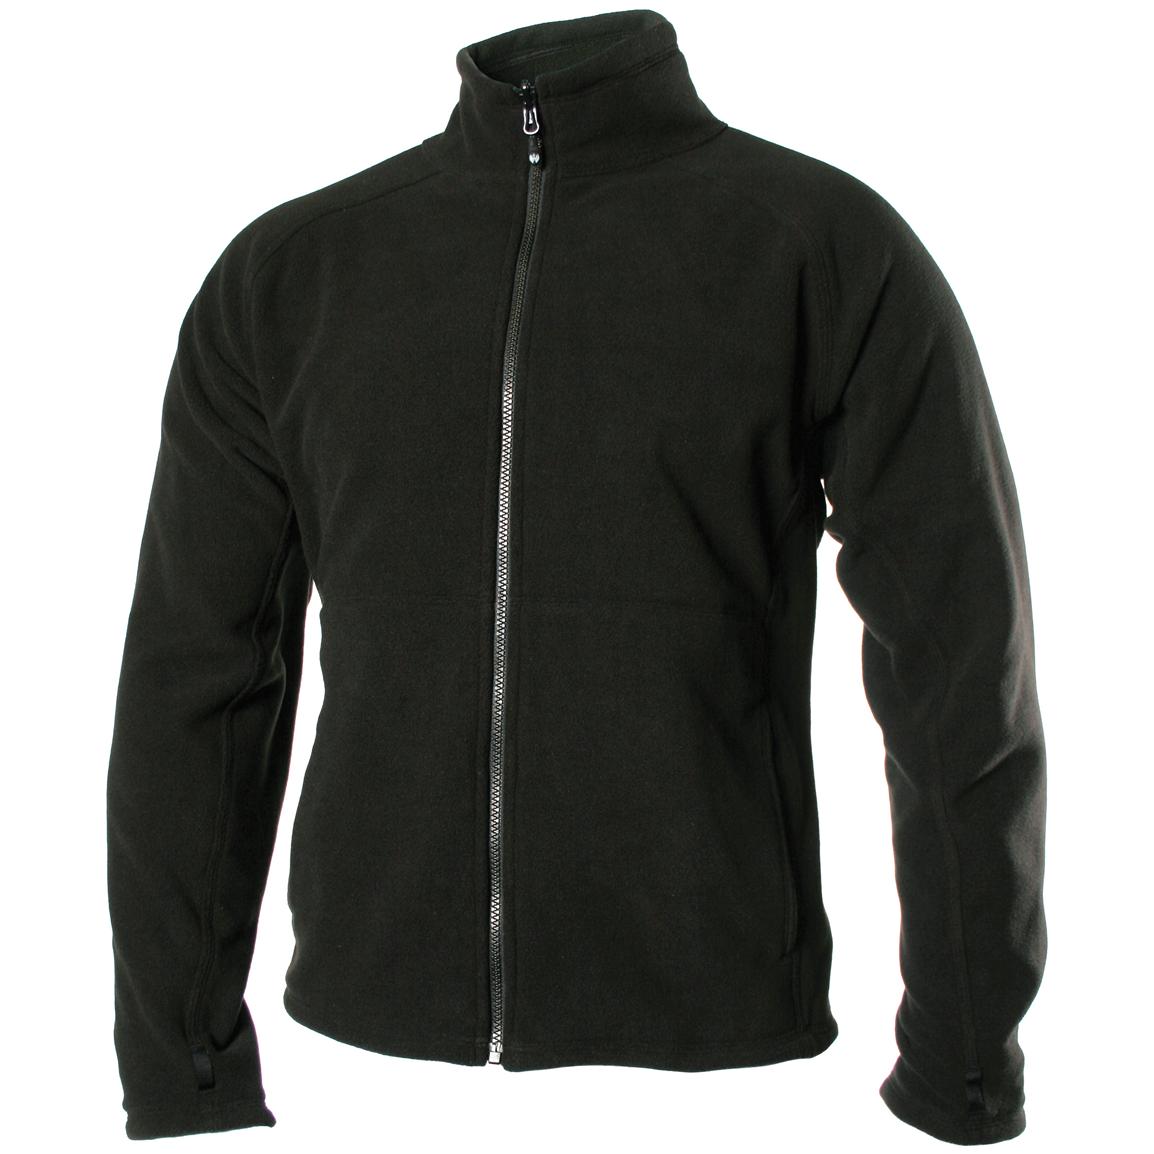 Men's BLACKHAWK® Warrior Wear Fleece Liner / Jacket - 187724, Insulated ...